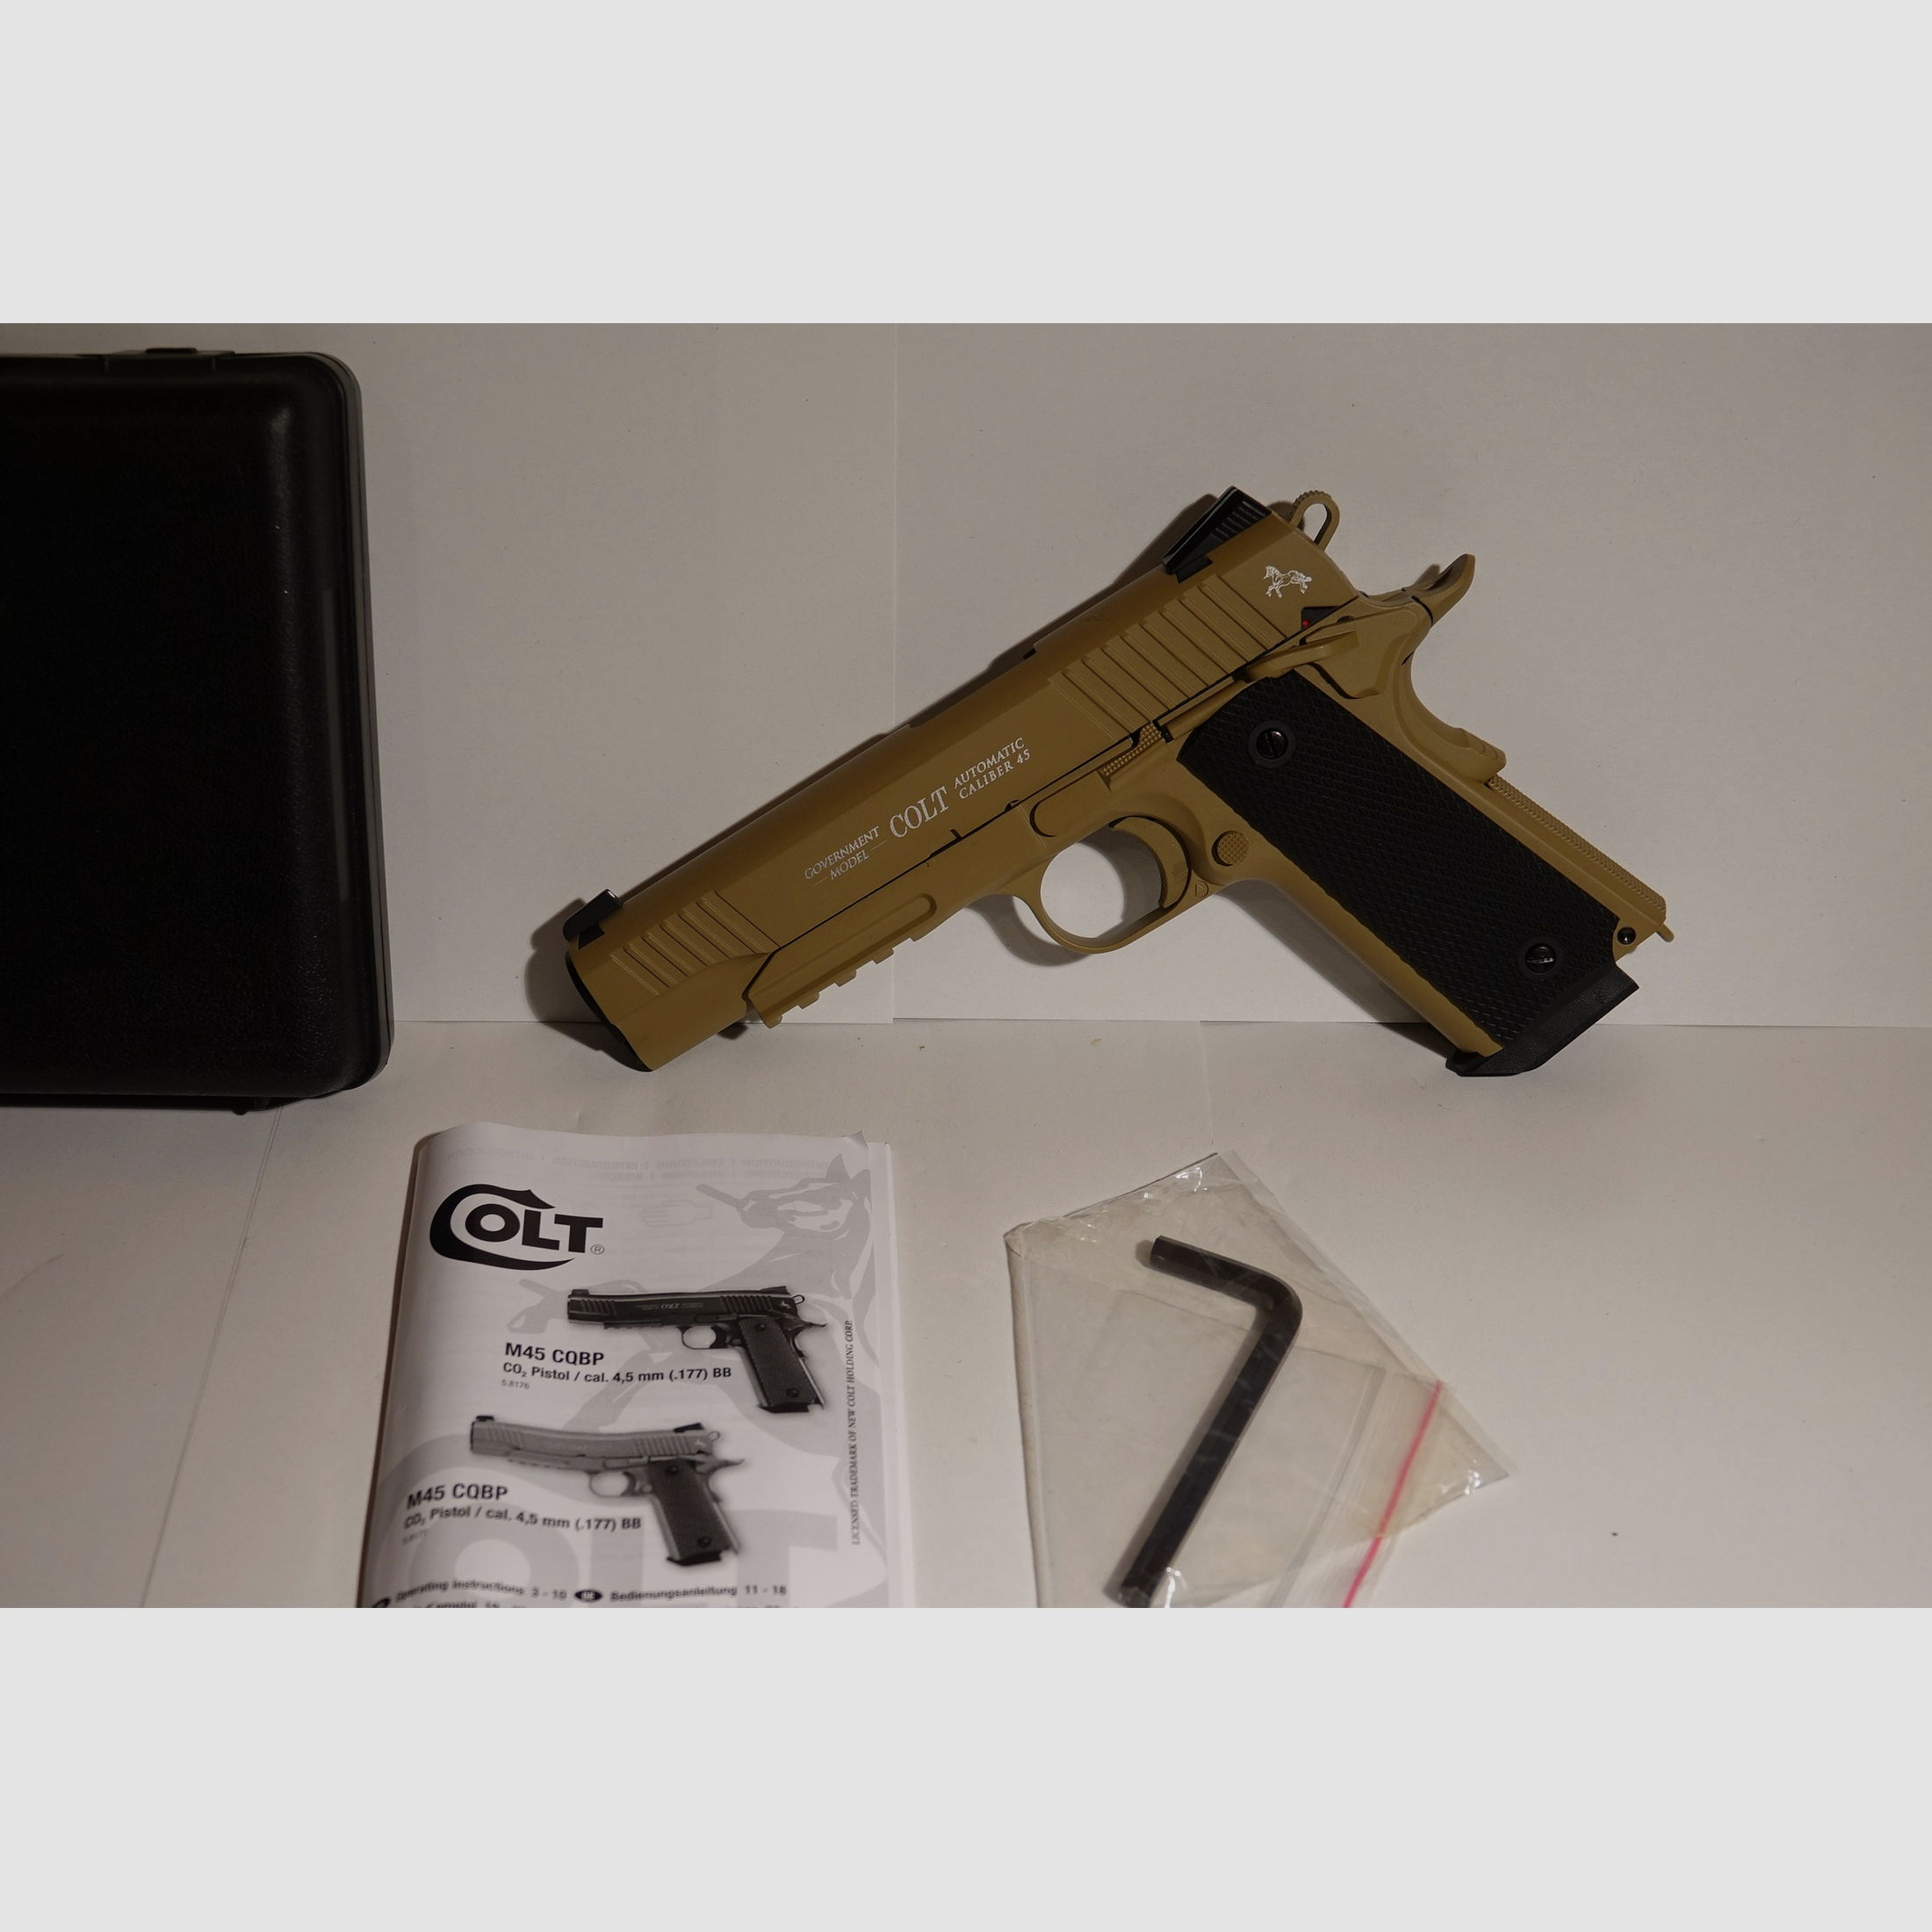 Colt M45 CQBP CO2 Pistole in seltenem TAN BEIGE neuwertig